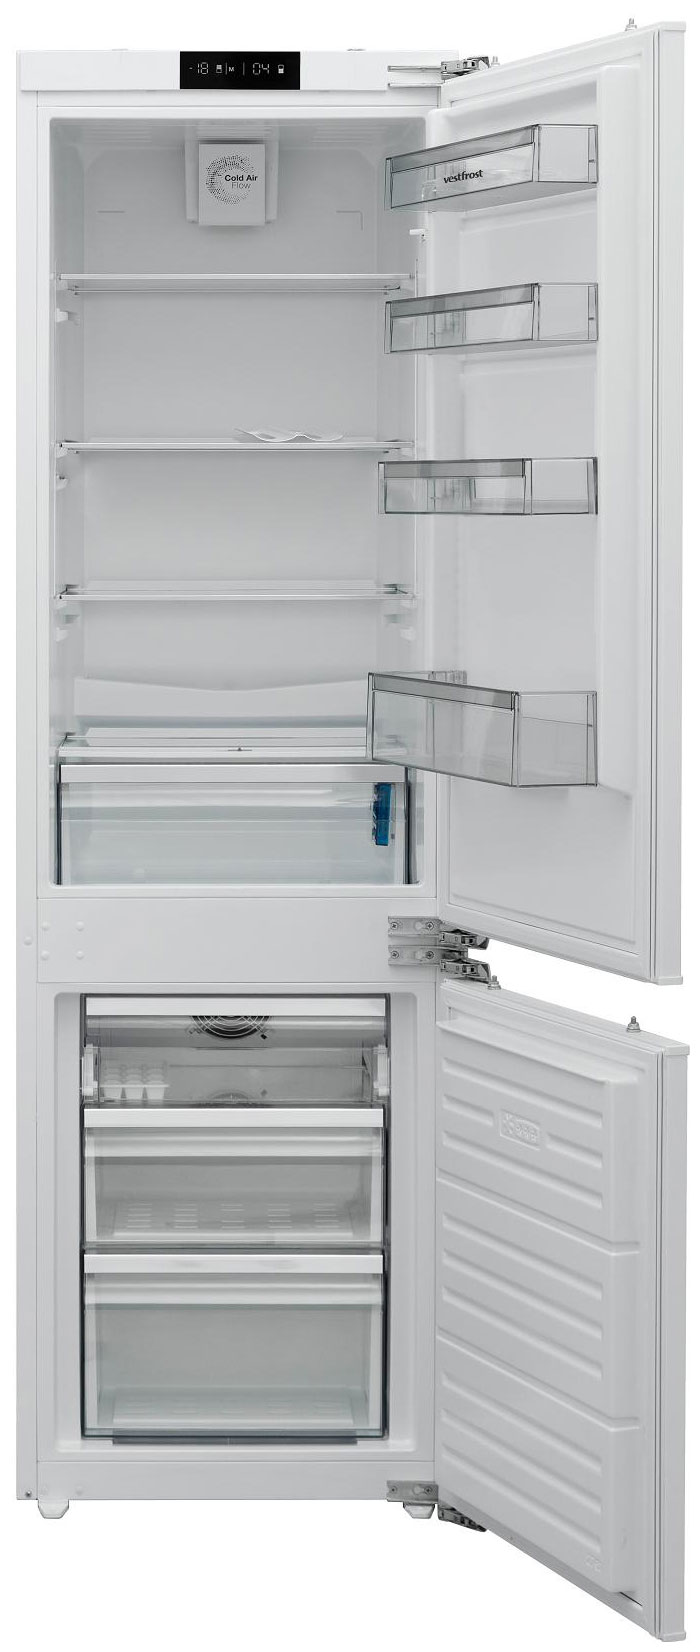 Встраиваемый двухкамерный холодильник Vestfrost VFBI17F00 встраиваемый двухкамерный холодильник zigmund